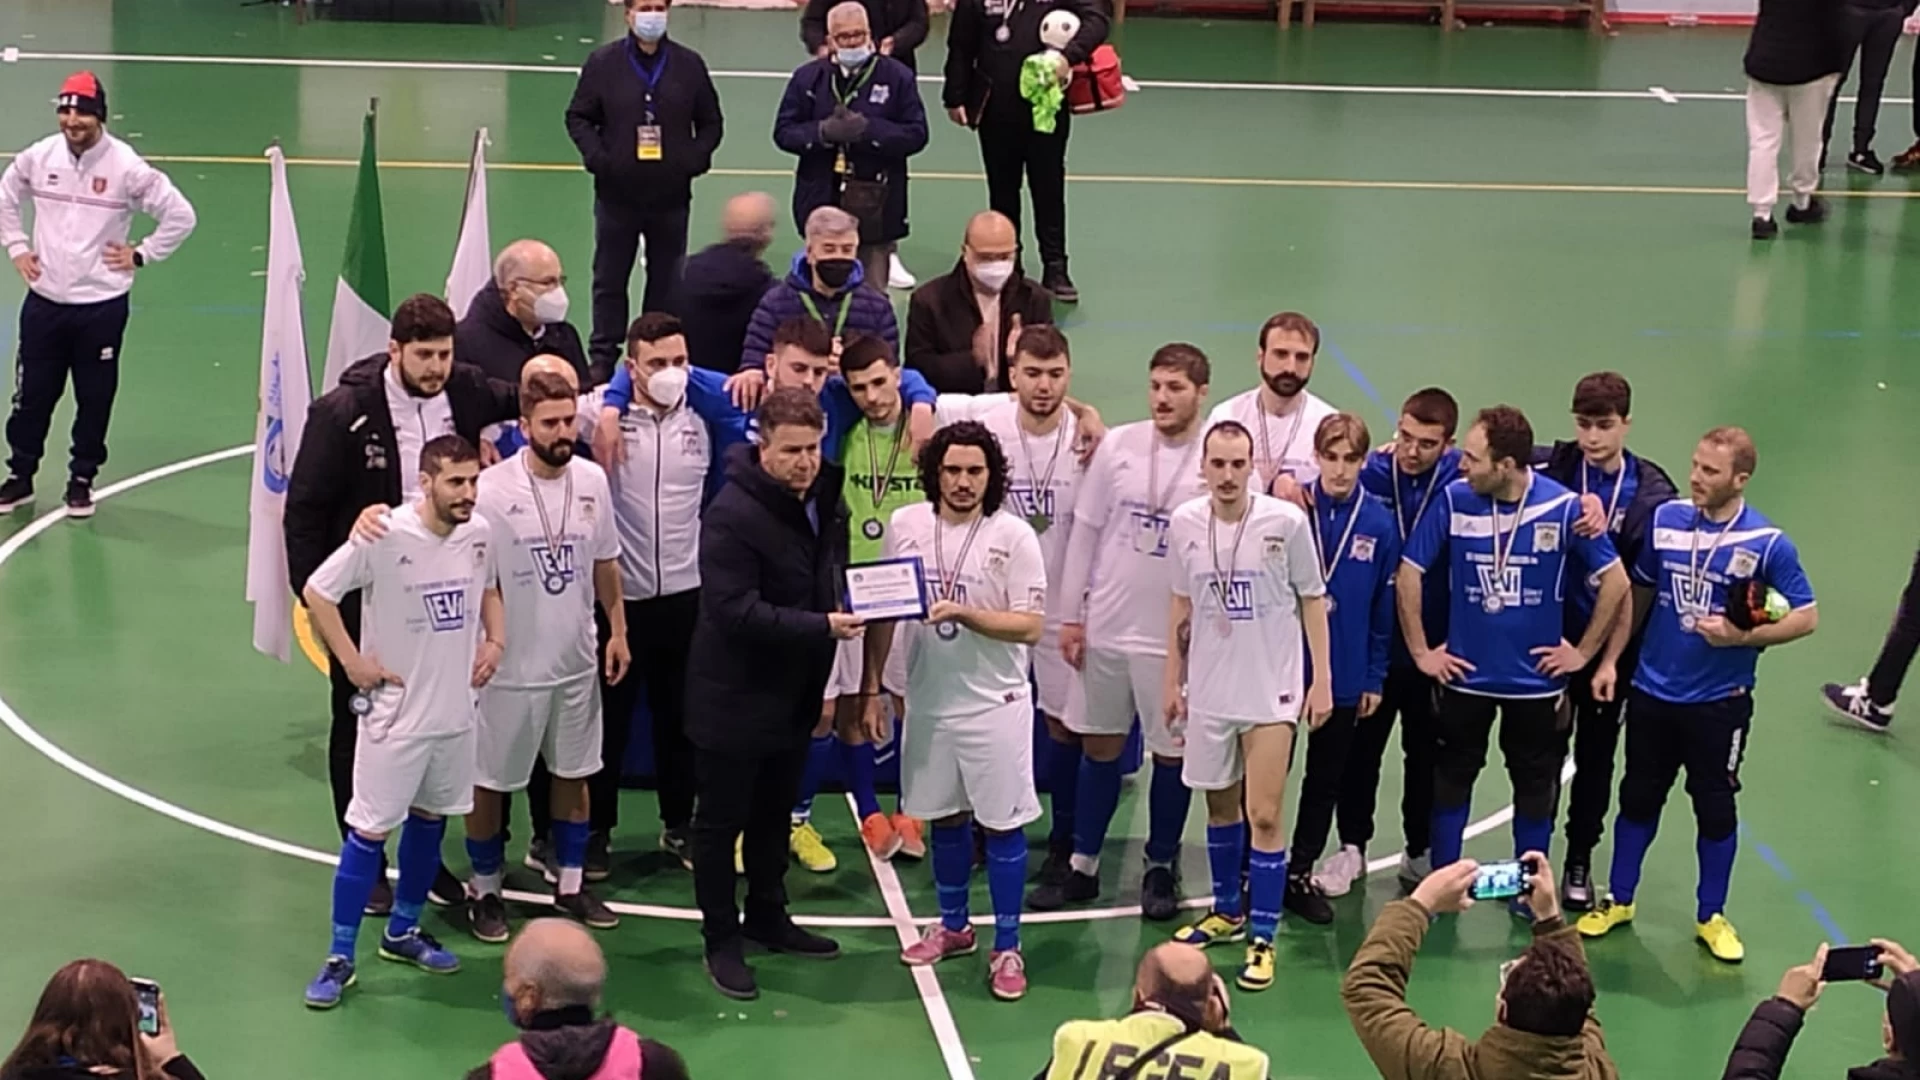 Calcio a 5: continua il sogno della Futsal Colli a Volturno. Iniziano i play off. Nel pomeriggio gara 1 contro il Caraceno in casa.